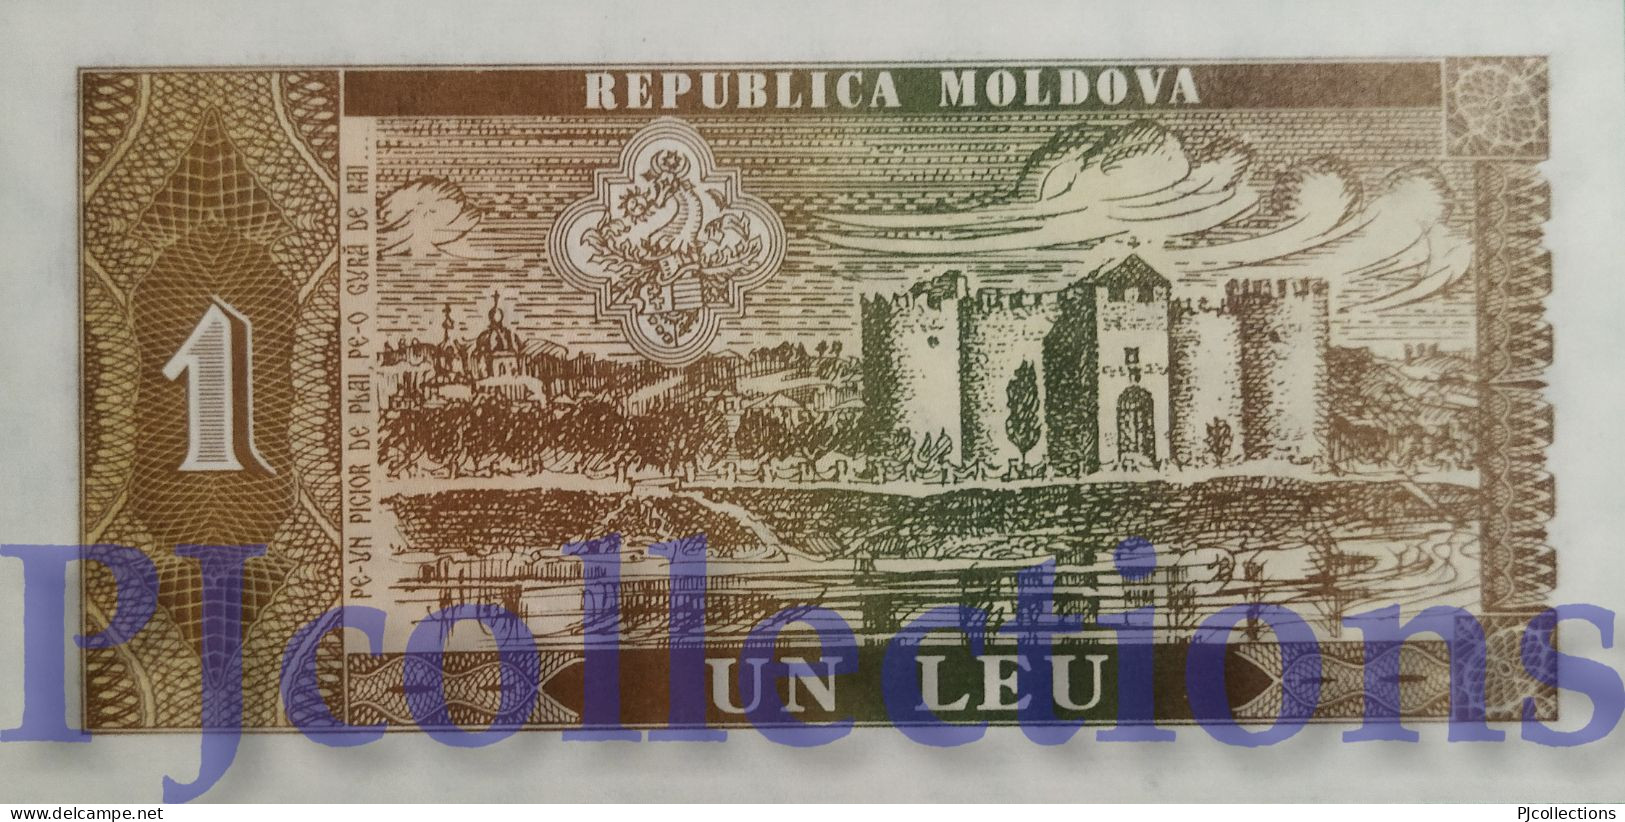 MOLDOVA 1 LEU 1992 PICK 5 UNC - Moldawien (Moldau)